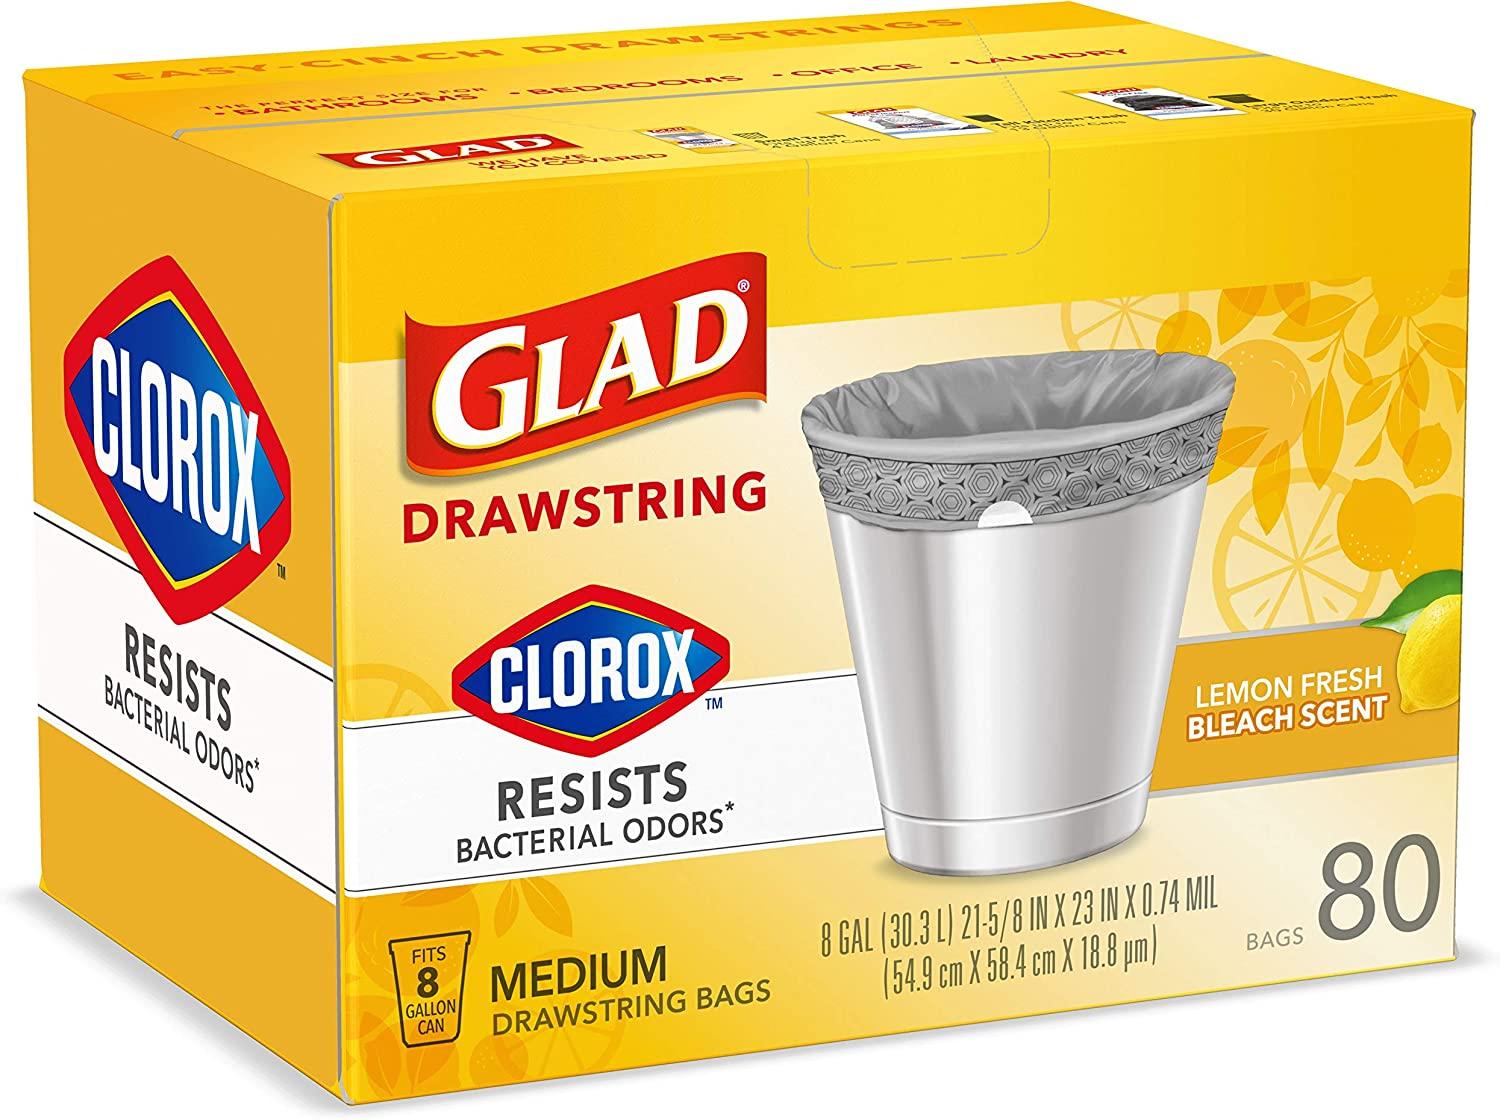 Glad Small Drawstring Trash Bags - Clorox Lemon Fresh - 4 Gallon